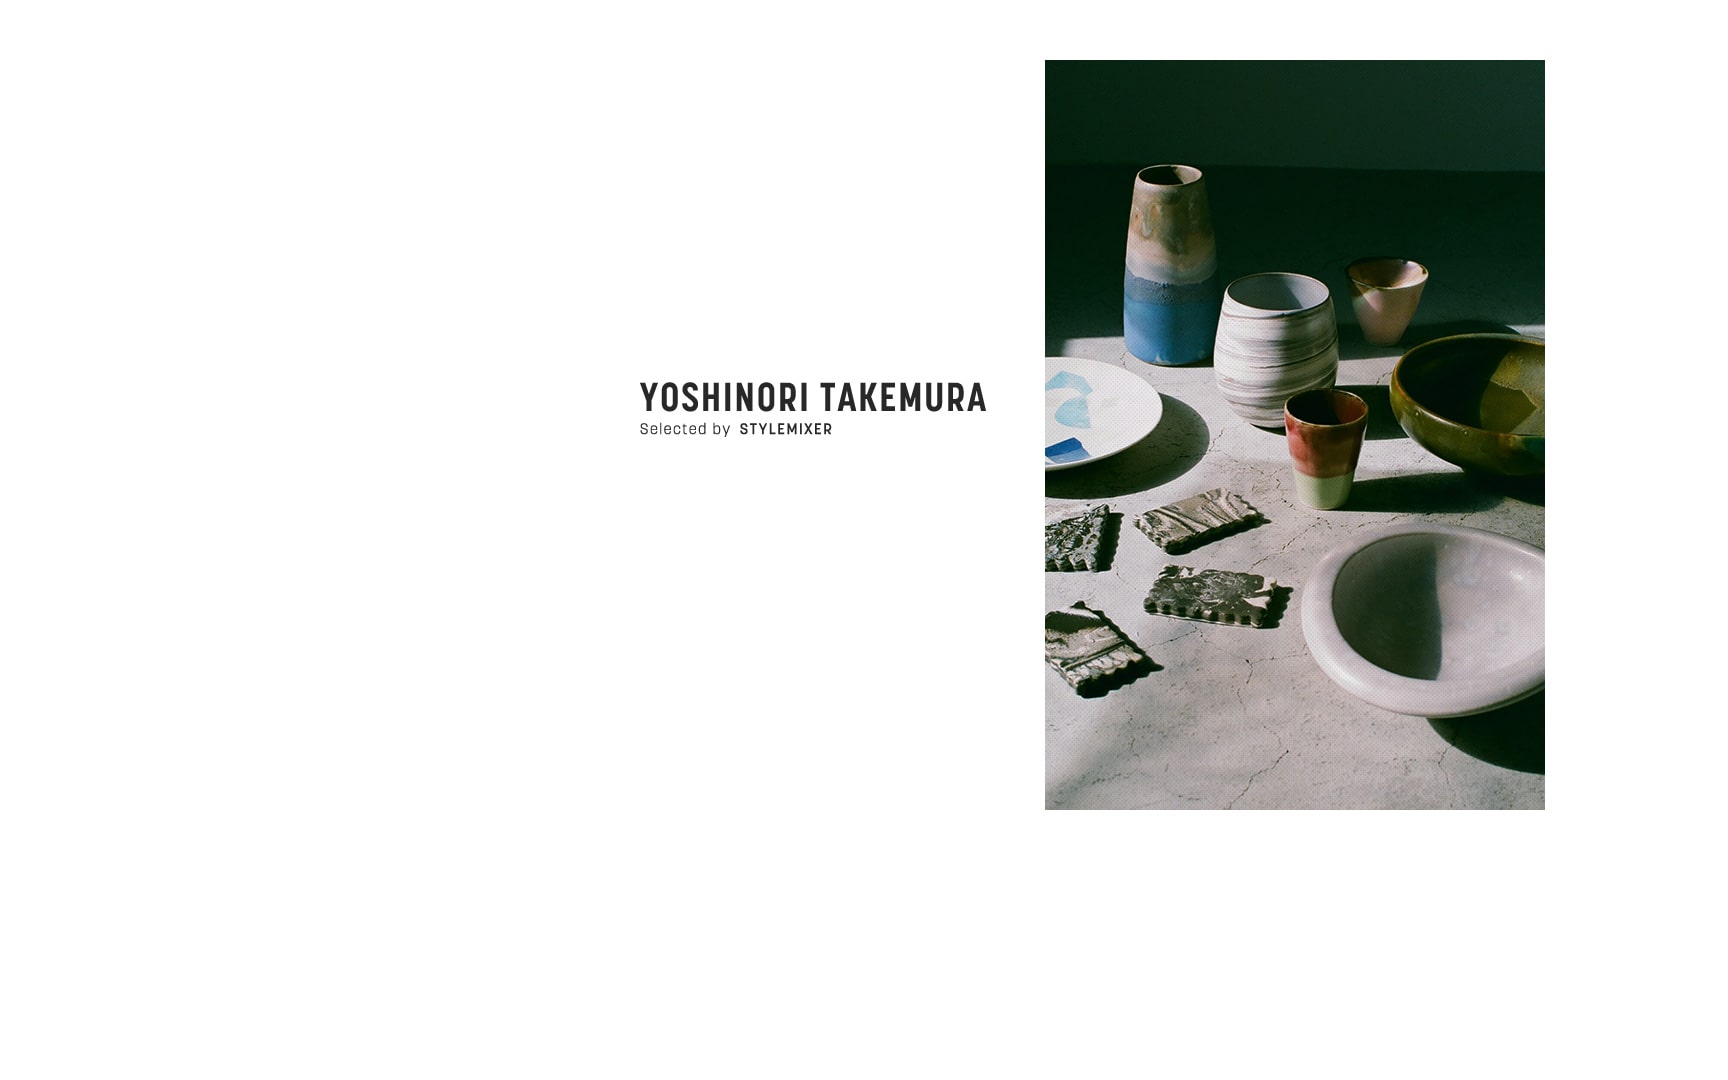 Yoshinori Takemura